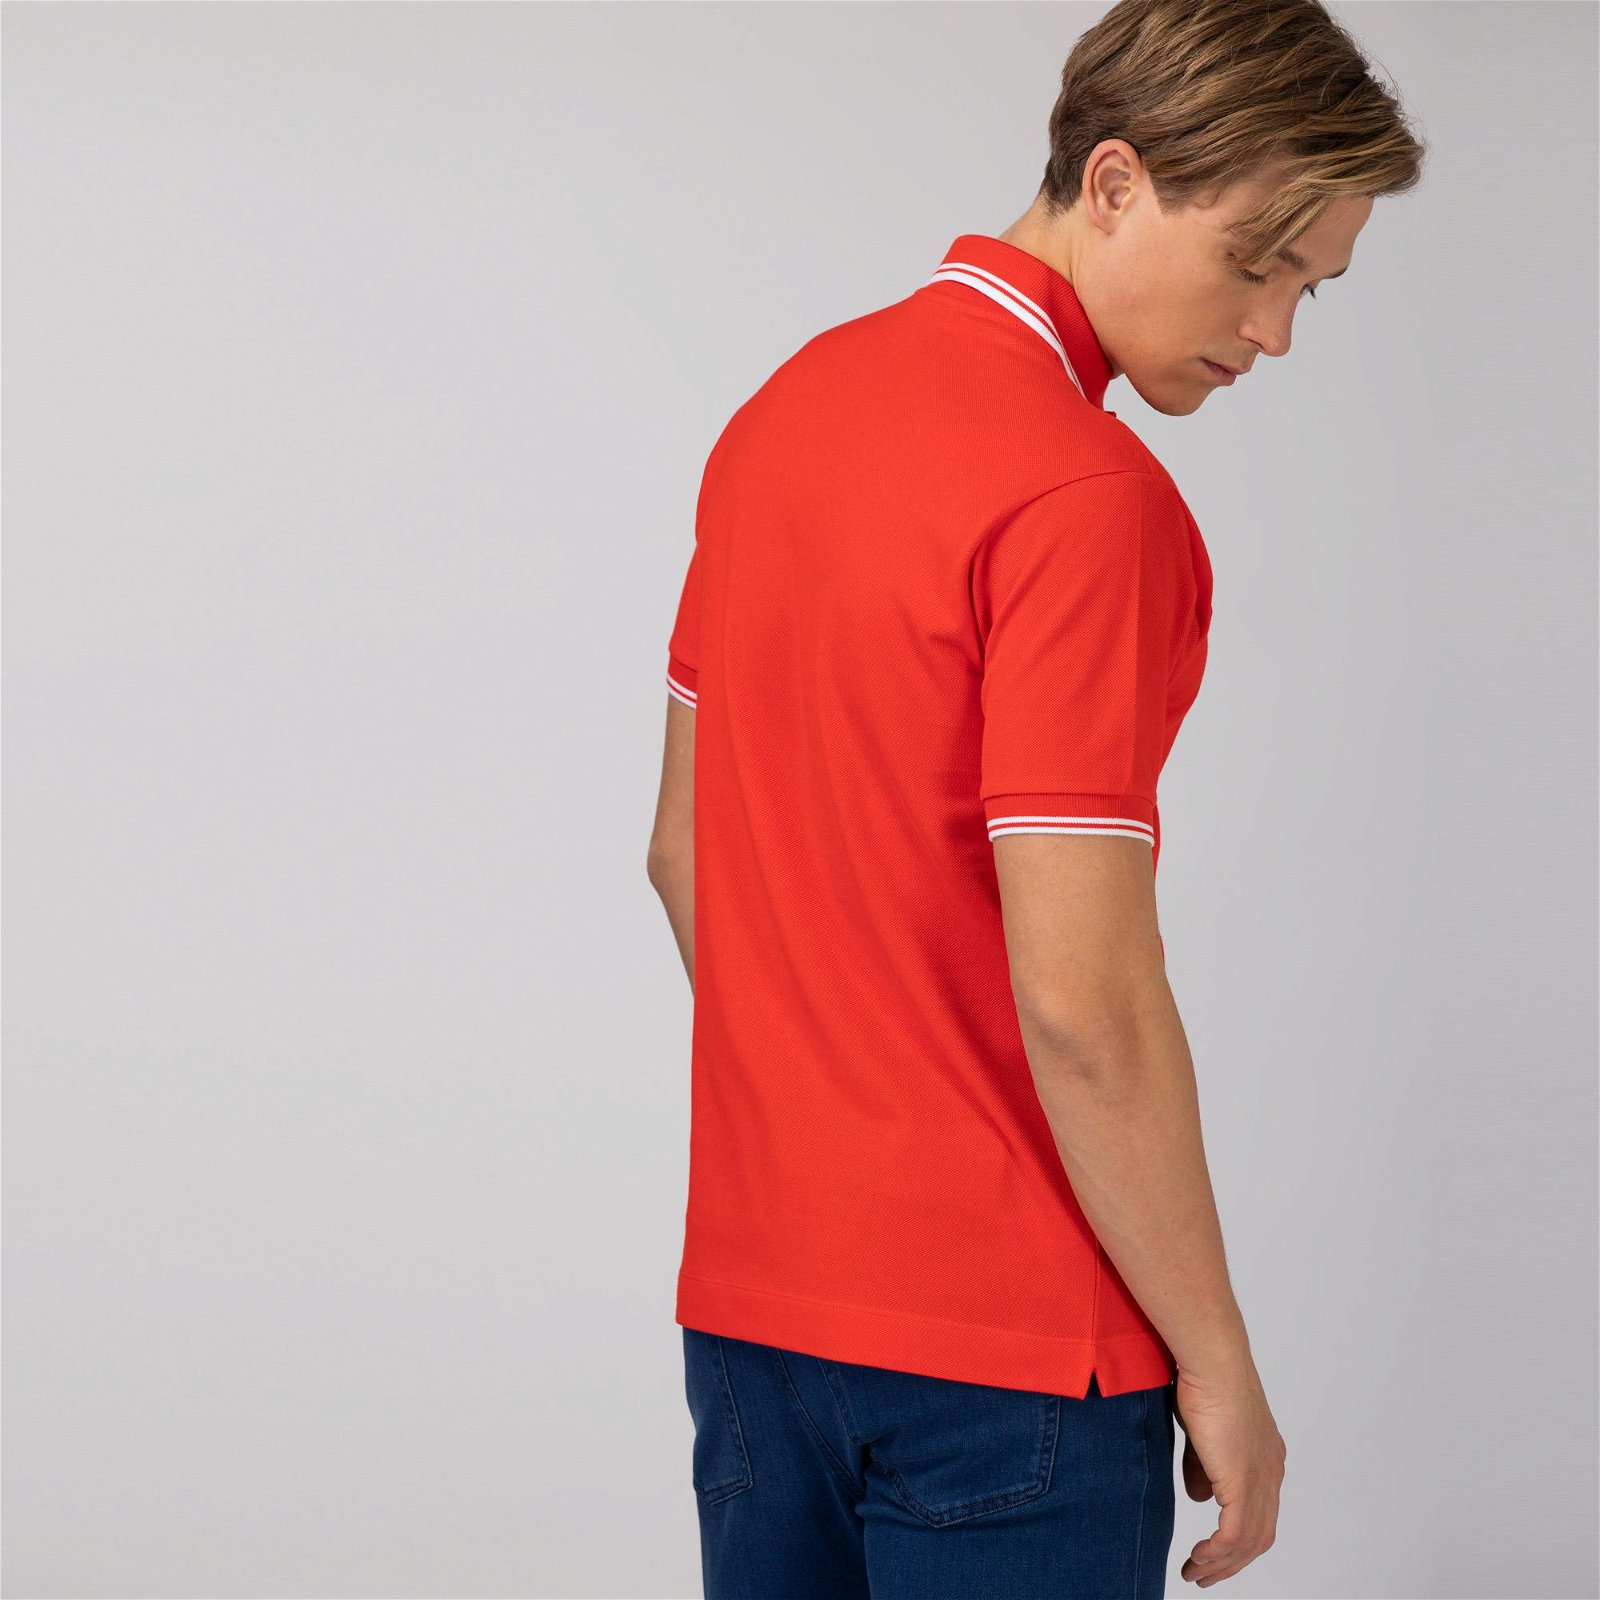 Lacoste mužský košile polo Classic Fit  z bavlněného piké s akcenty v podobě pruhů